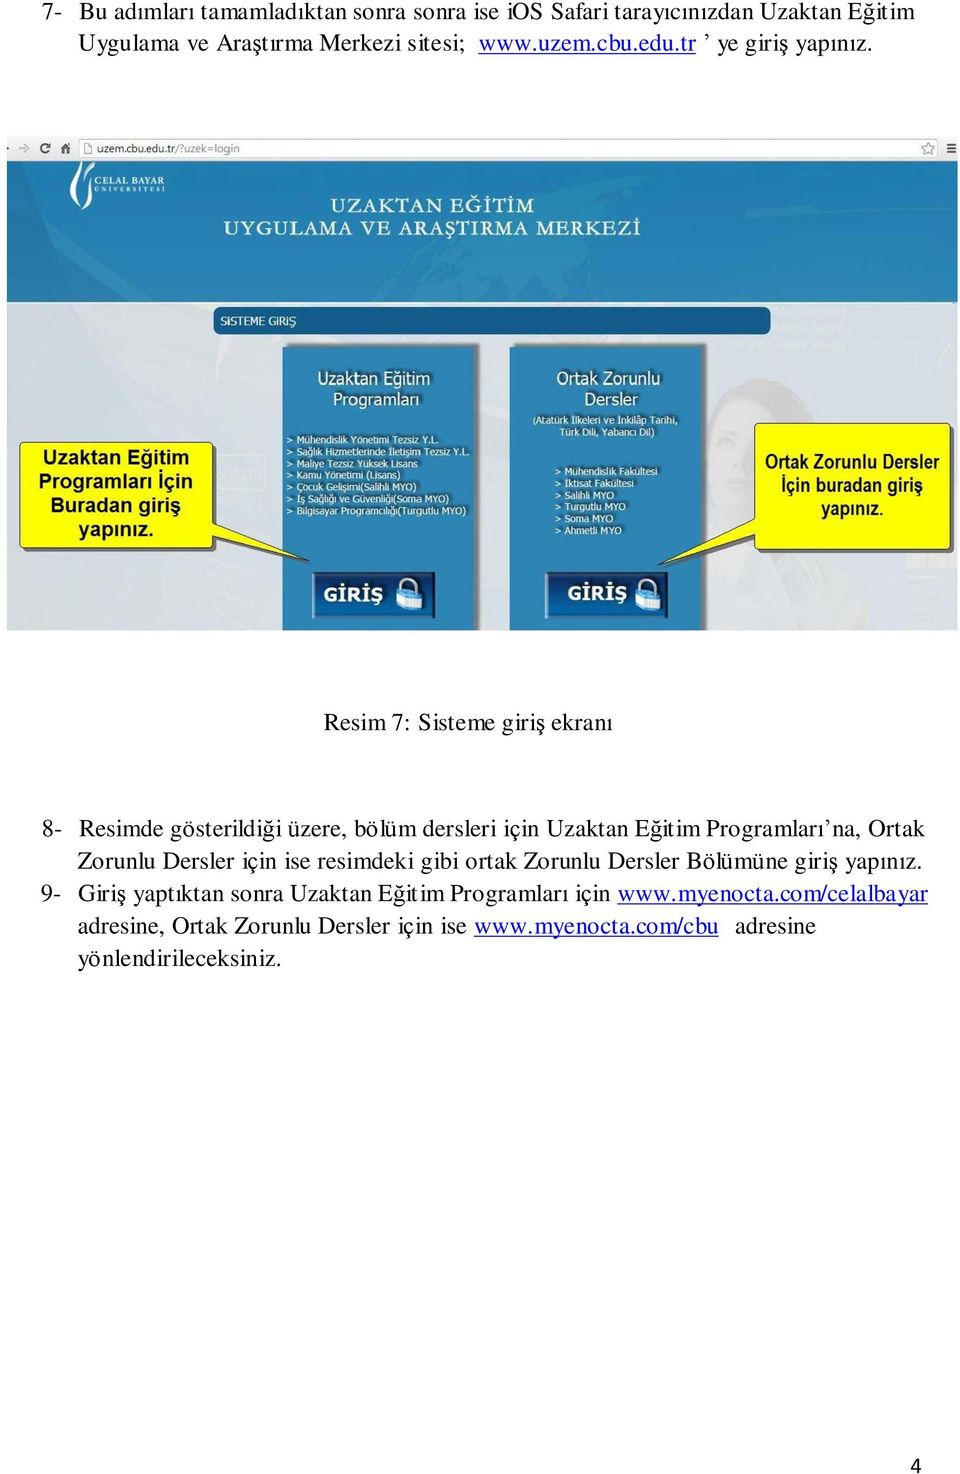 Resim 7: Sisteme giriş ekranı 8- Resimde gösterildiği üzere, bölüm dersleri için Uzaktan Eğitim Programları na, Ortak Zorunlu Dersler